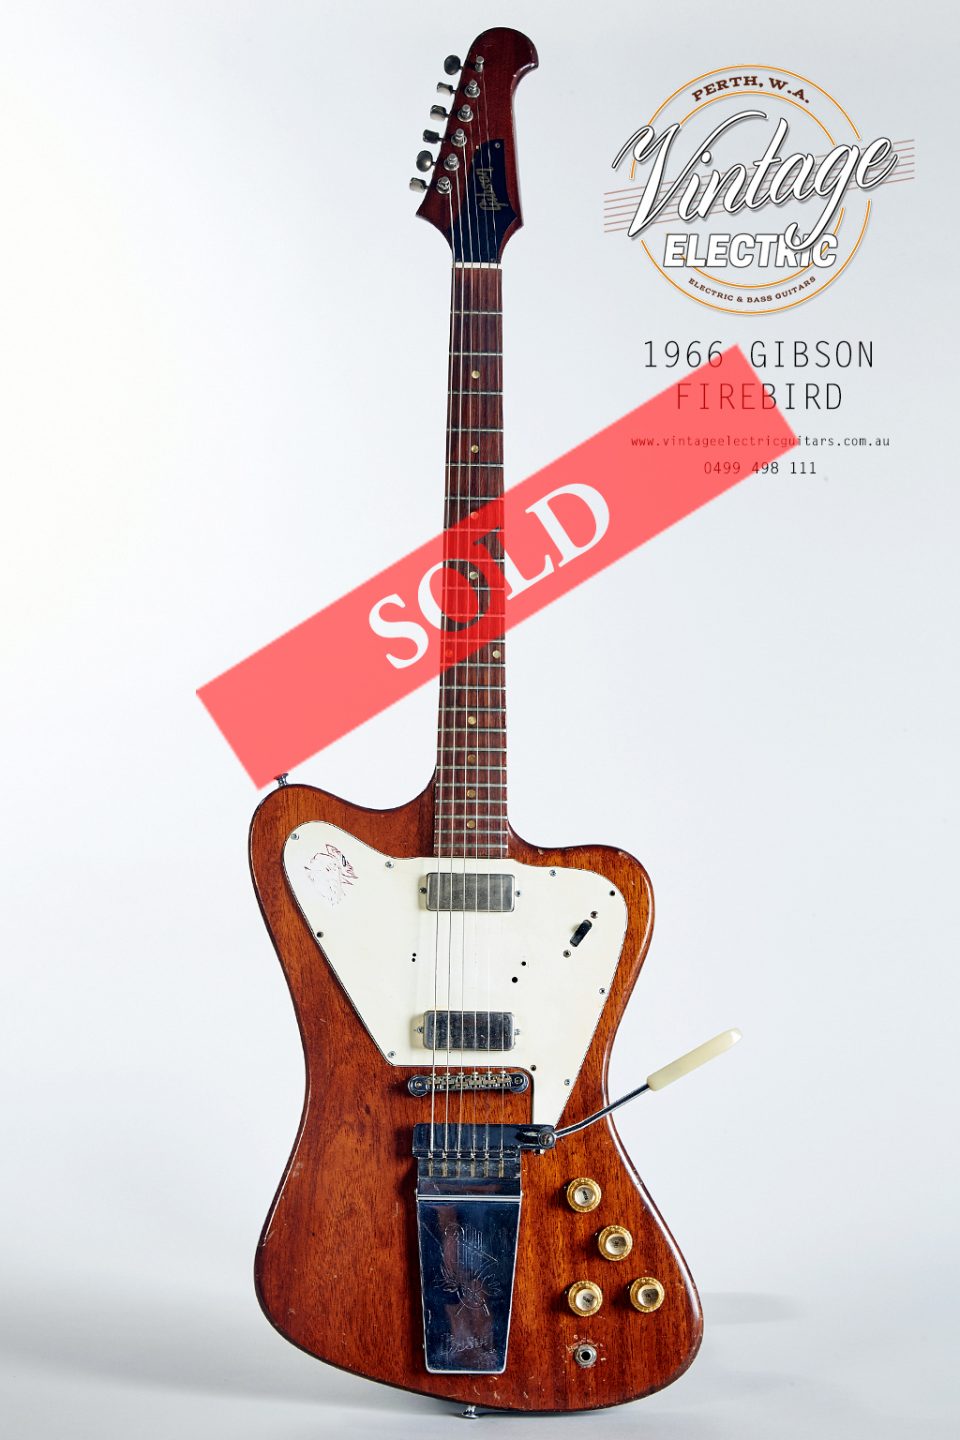 1966 Gibson Firebird